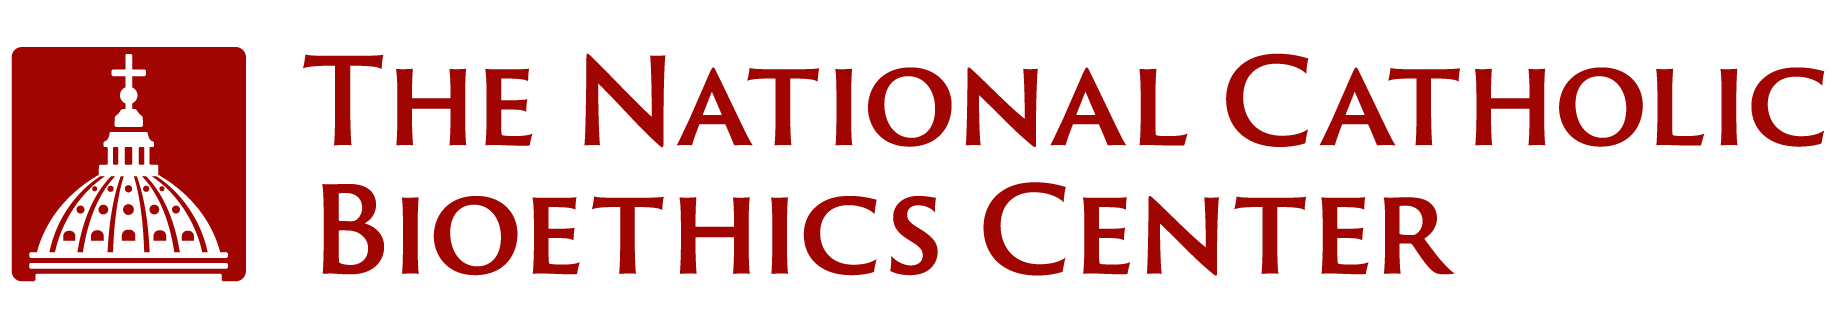 The National Catholic Bioethics Center logo